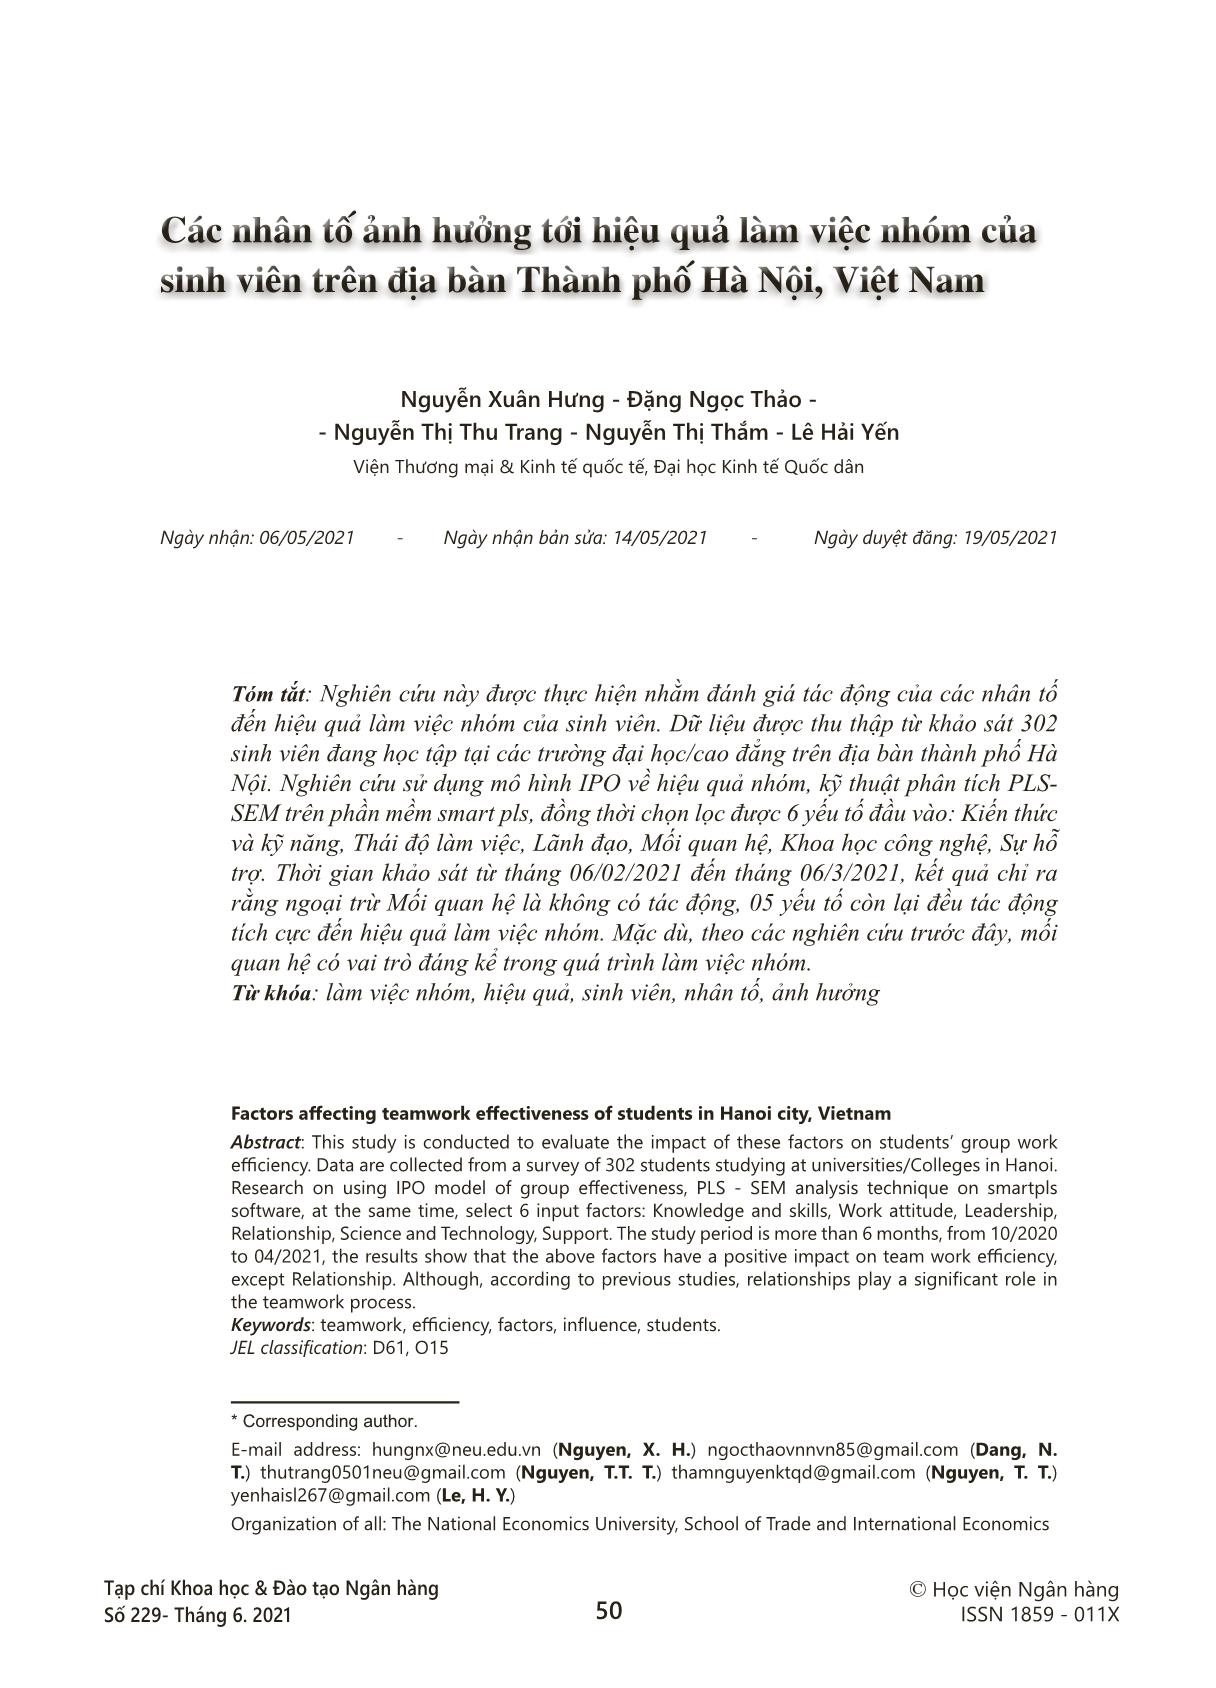 Các nhân tố ảnh hưởng tới hiệu quả làm việc nhóm của sinh viên trên địa bàn thành phố Hà Nội, Việt Nam trang 1